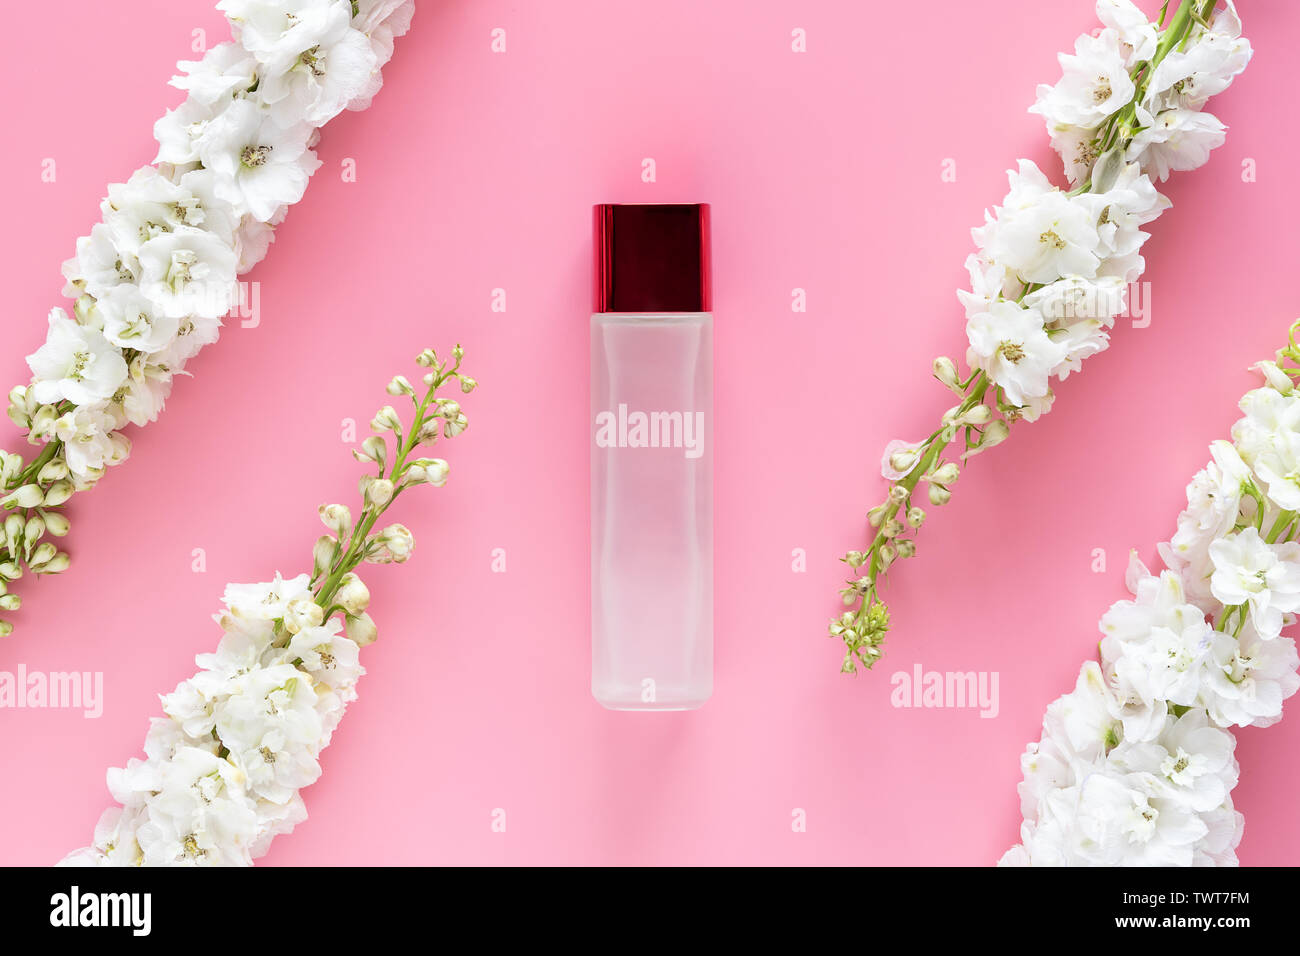 La belleza natural de la cosmética producto cosmético de lujo botella con flores blancas de primavera herbal sobre fondo de color rosa pastel. etiqueta en blanco para la marca Foto de stock